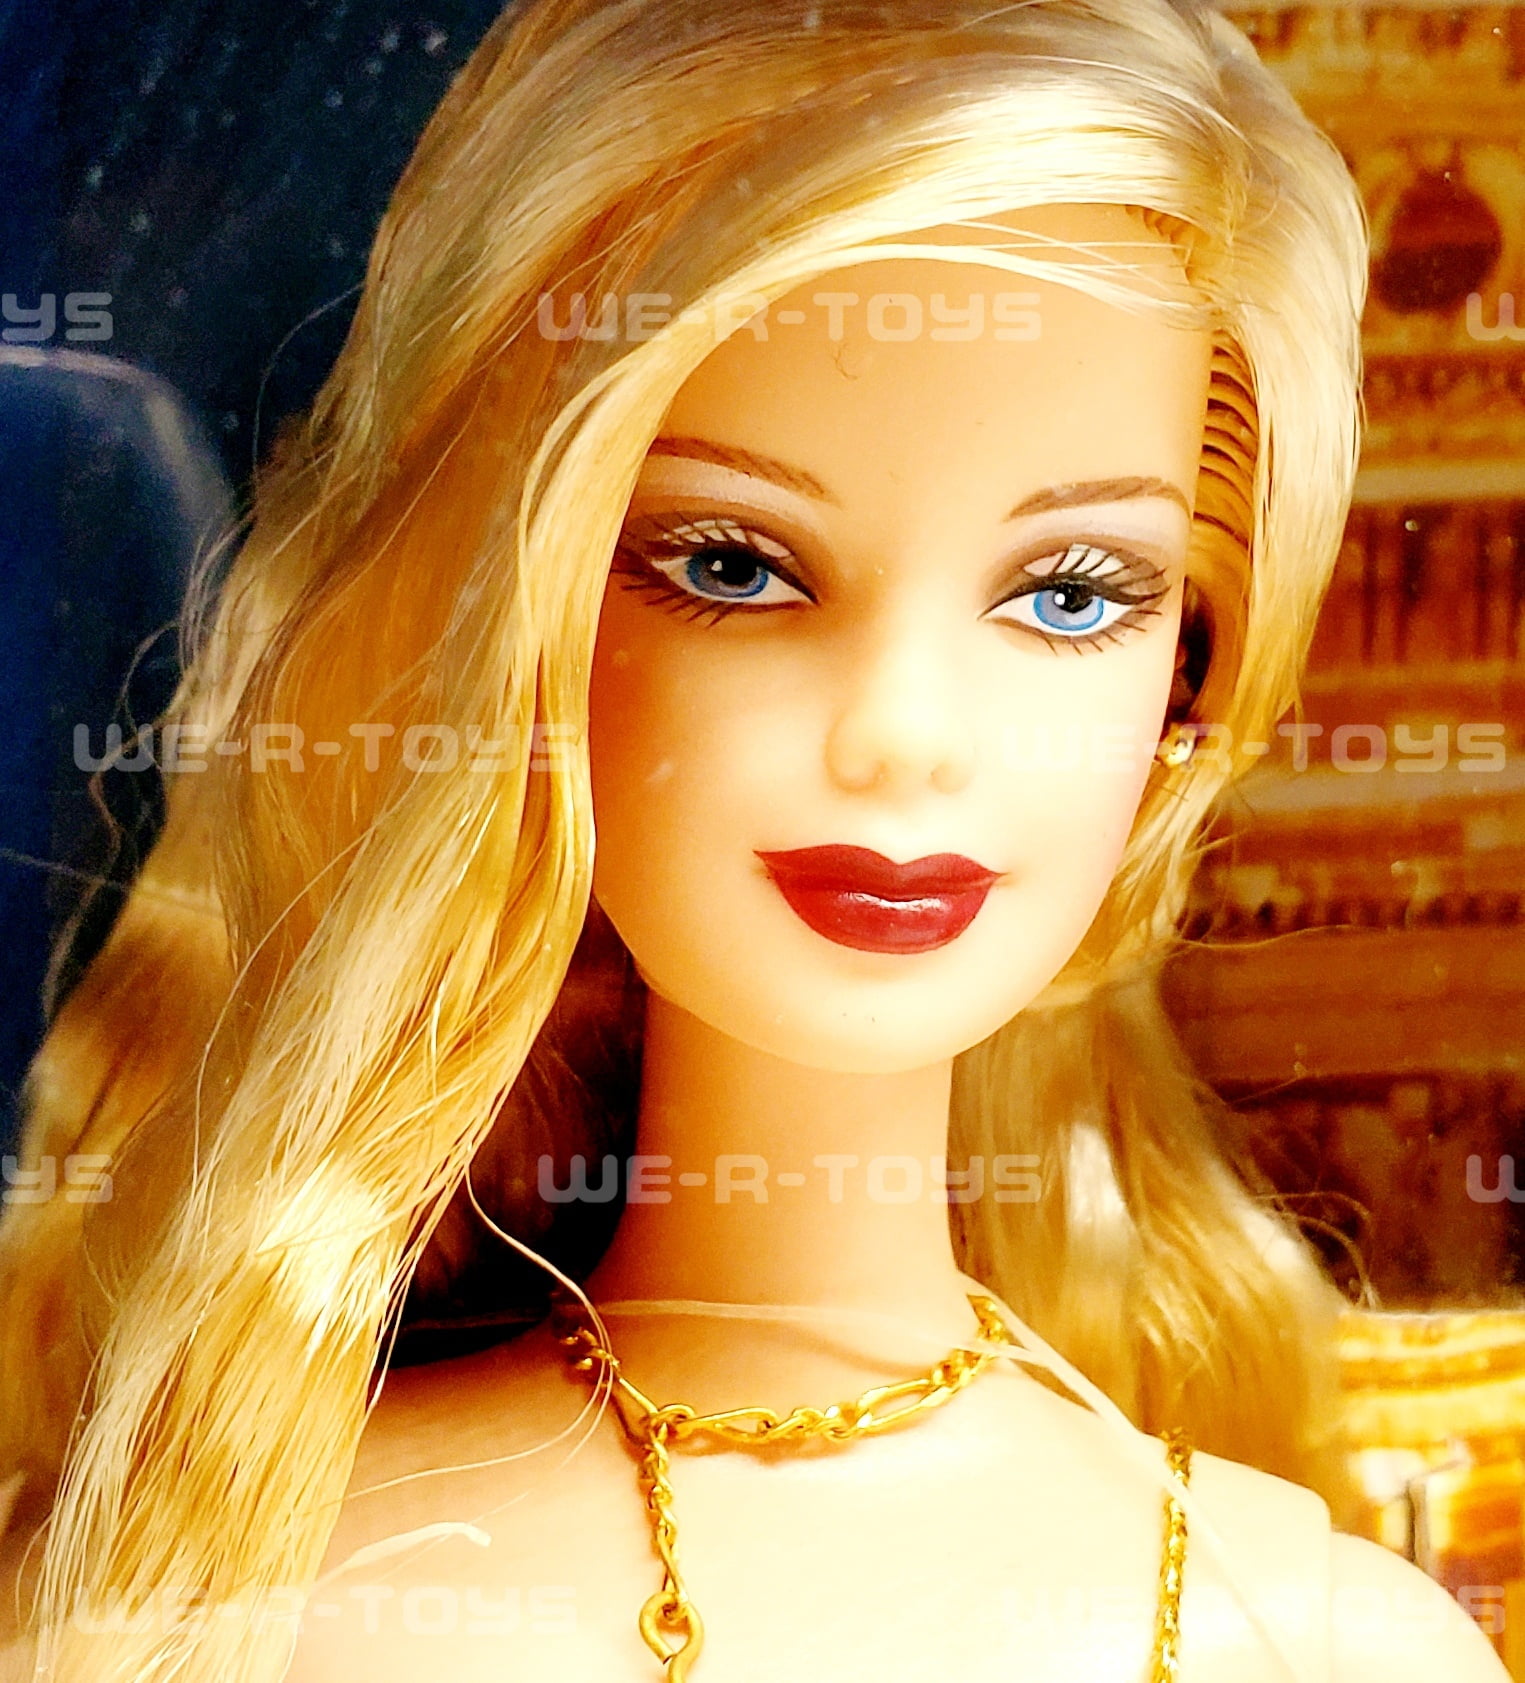 Barbie Loves Pop Culture: James Bond 007 Ken and Barbie Gift Set